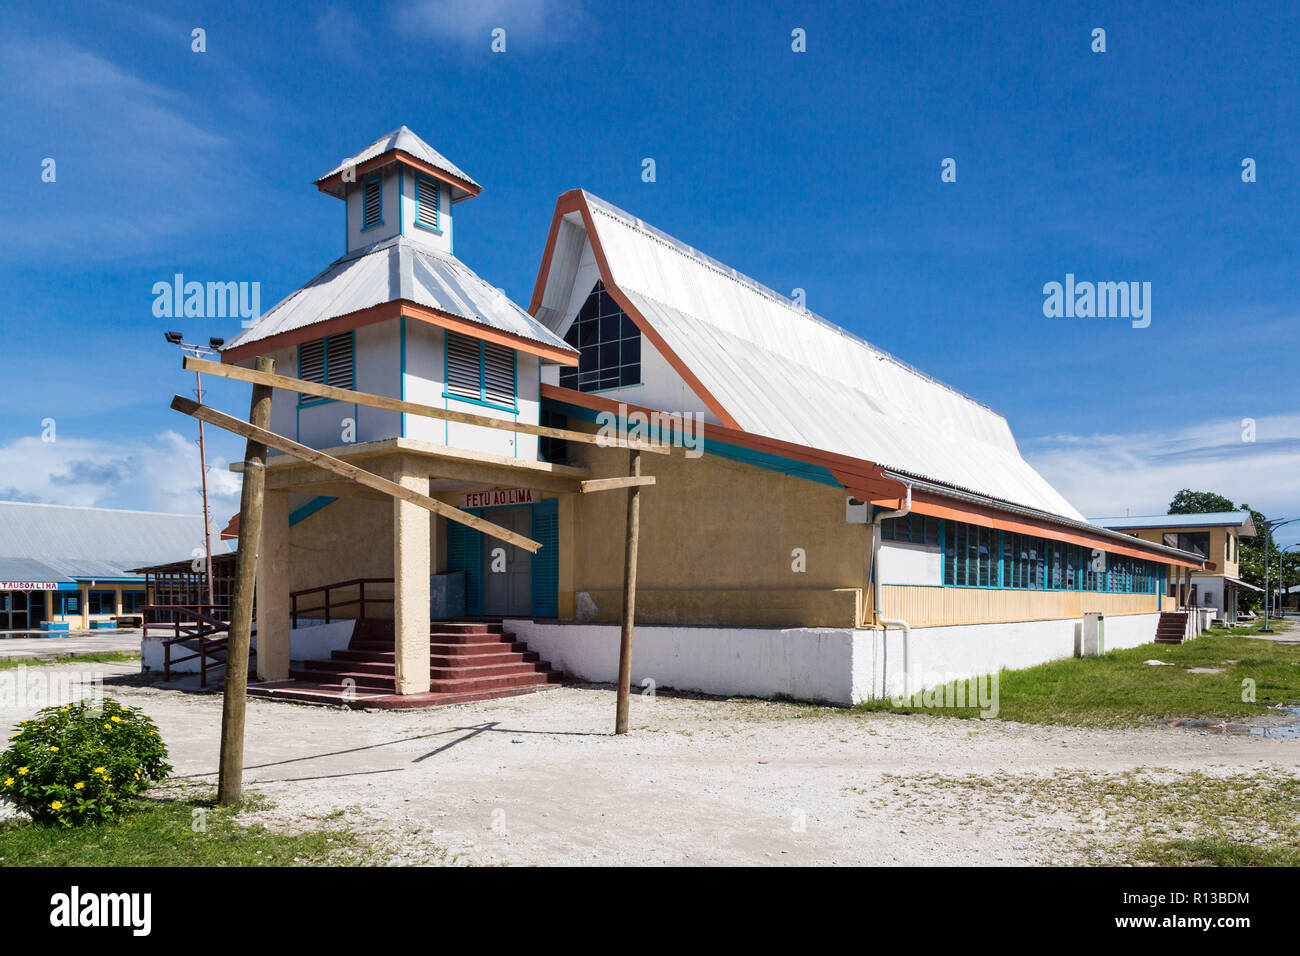 La maggior parte prominente edificio su Funafuti Atoll è Teone chiesa (Fetu Ao Lima, Stella del mattino chiesa). Lima Tausoa Falekaupule. Tuvalu, Oceania Polinesia. Foto Stock